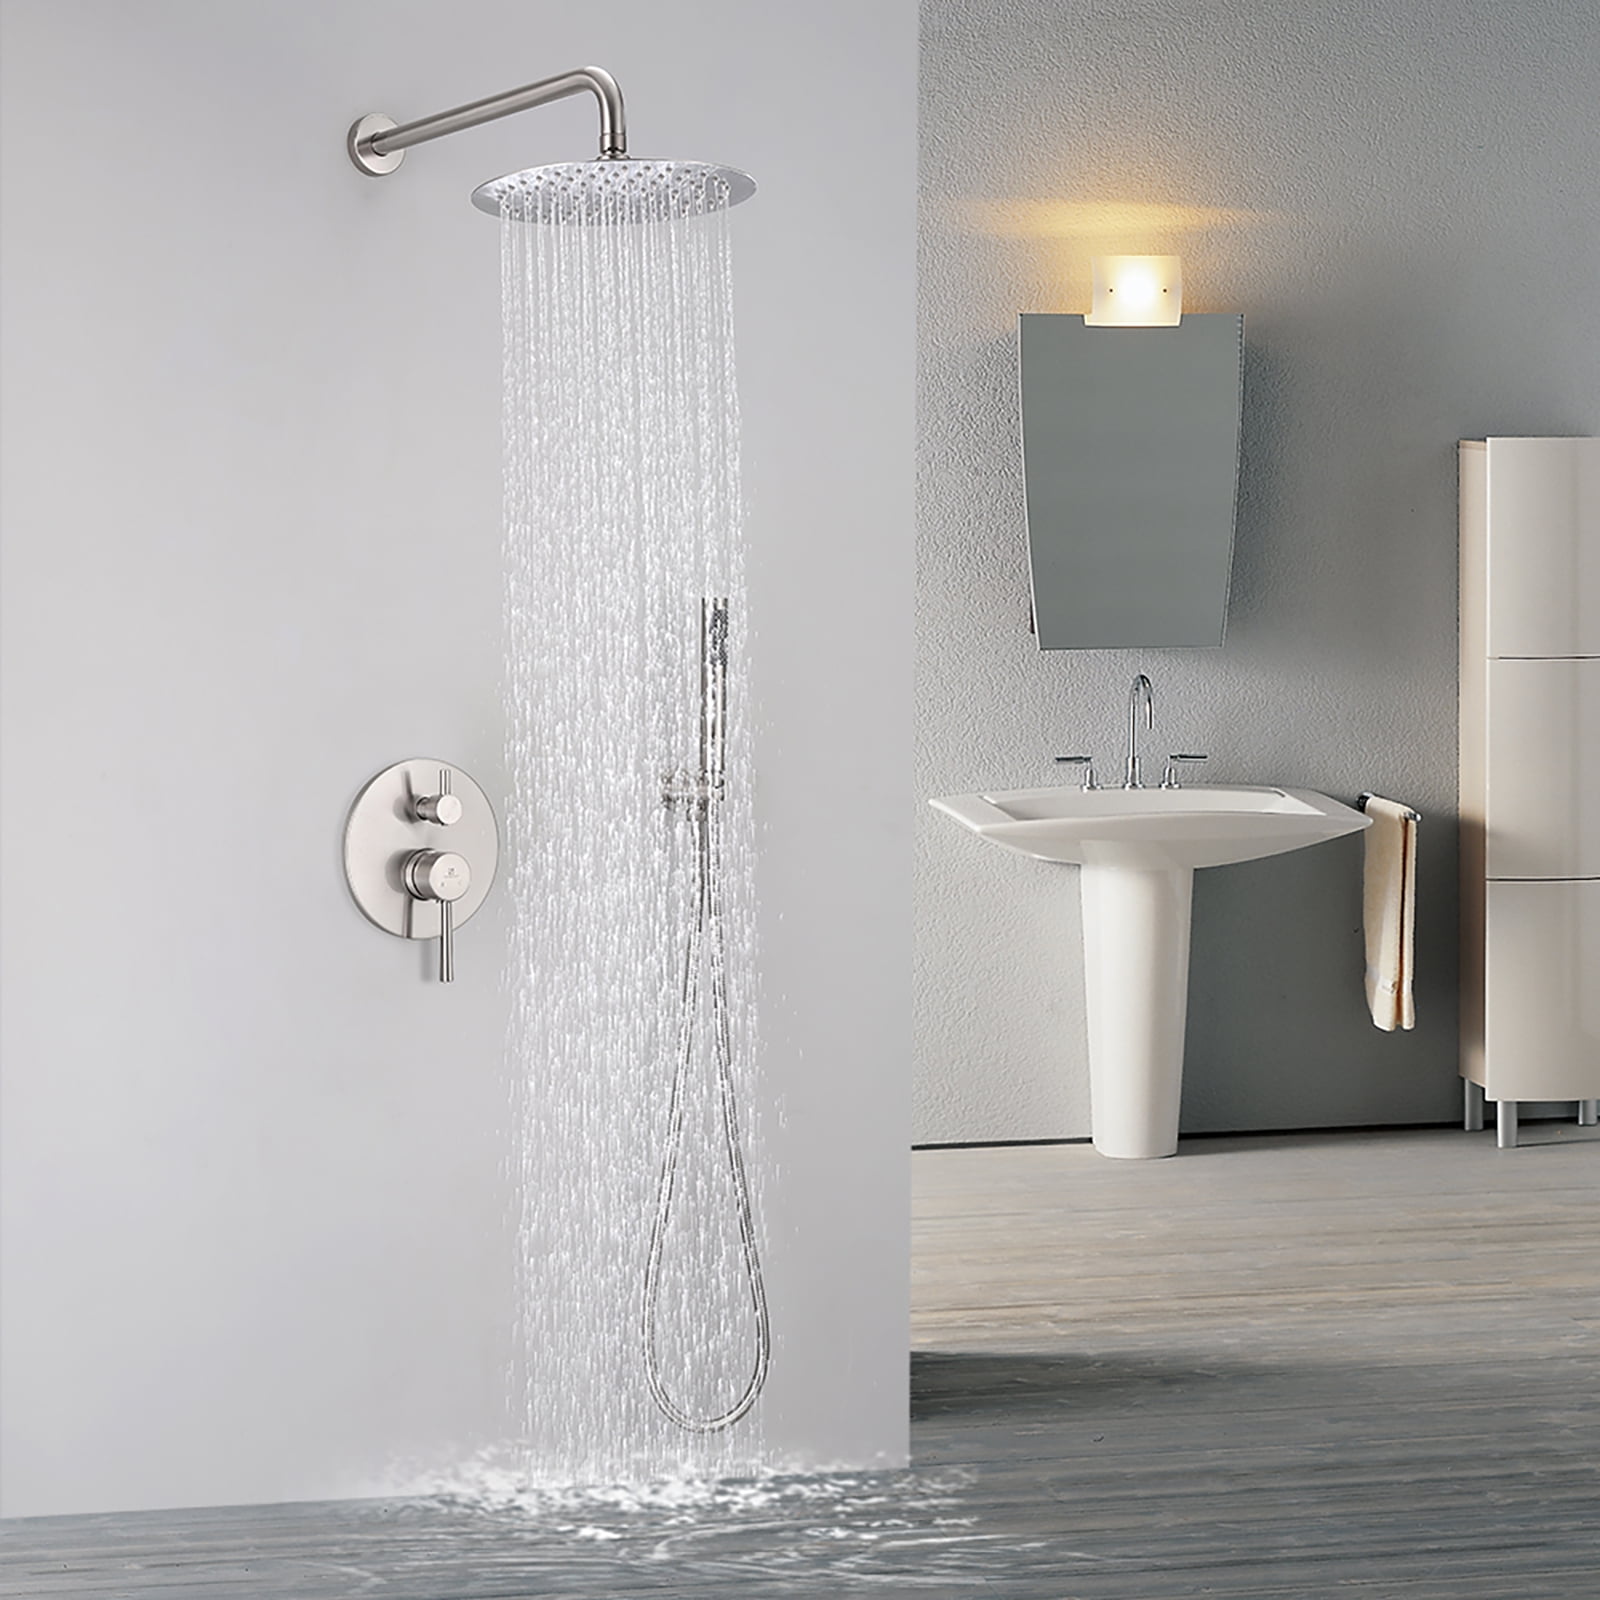 16" Bathroom Rain Mixer Shower Matte Black LED Faucet Set Handheld Head Tap Unit 